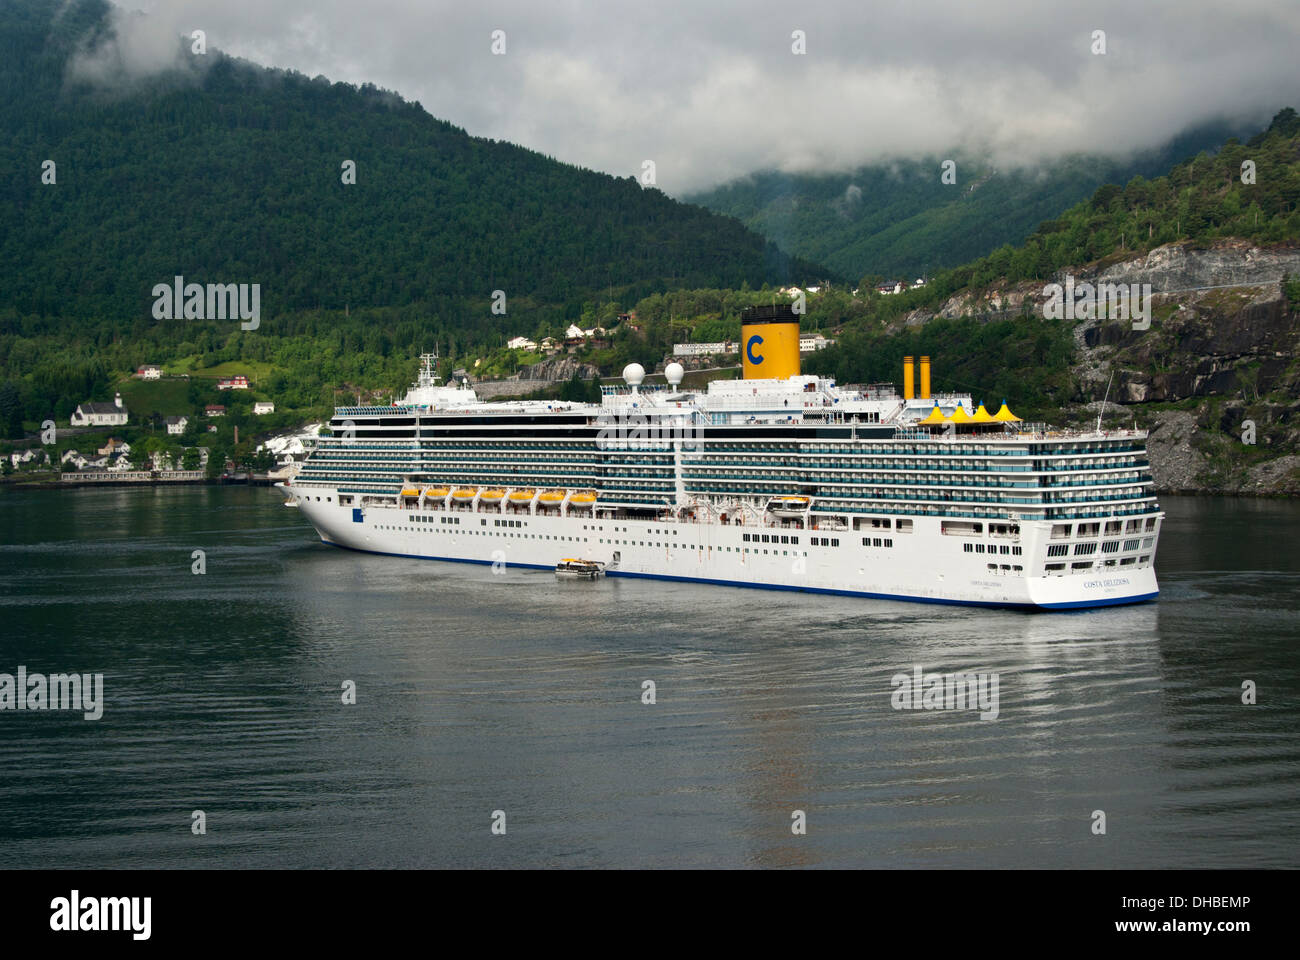 Costa Kreuzfahrten Liner Deliziosa Ankunft in Geirangerfjord in Norwegen  Stockfotografie - Alamy